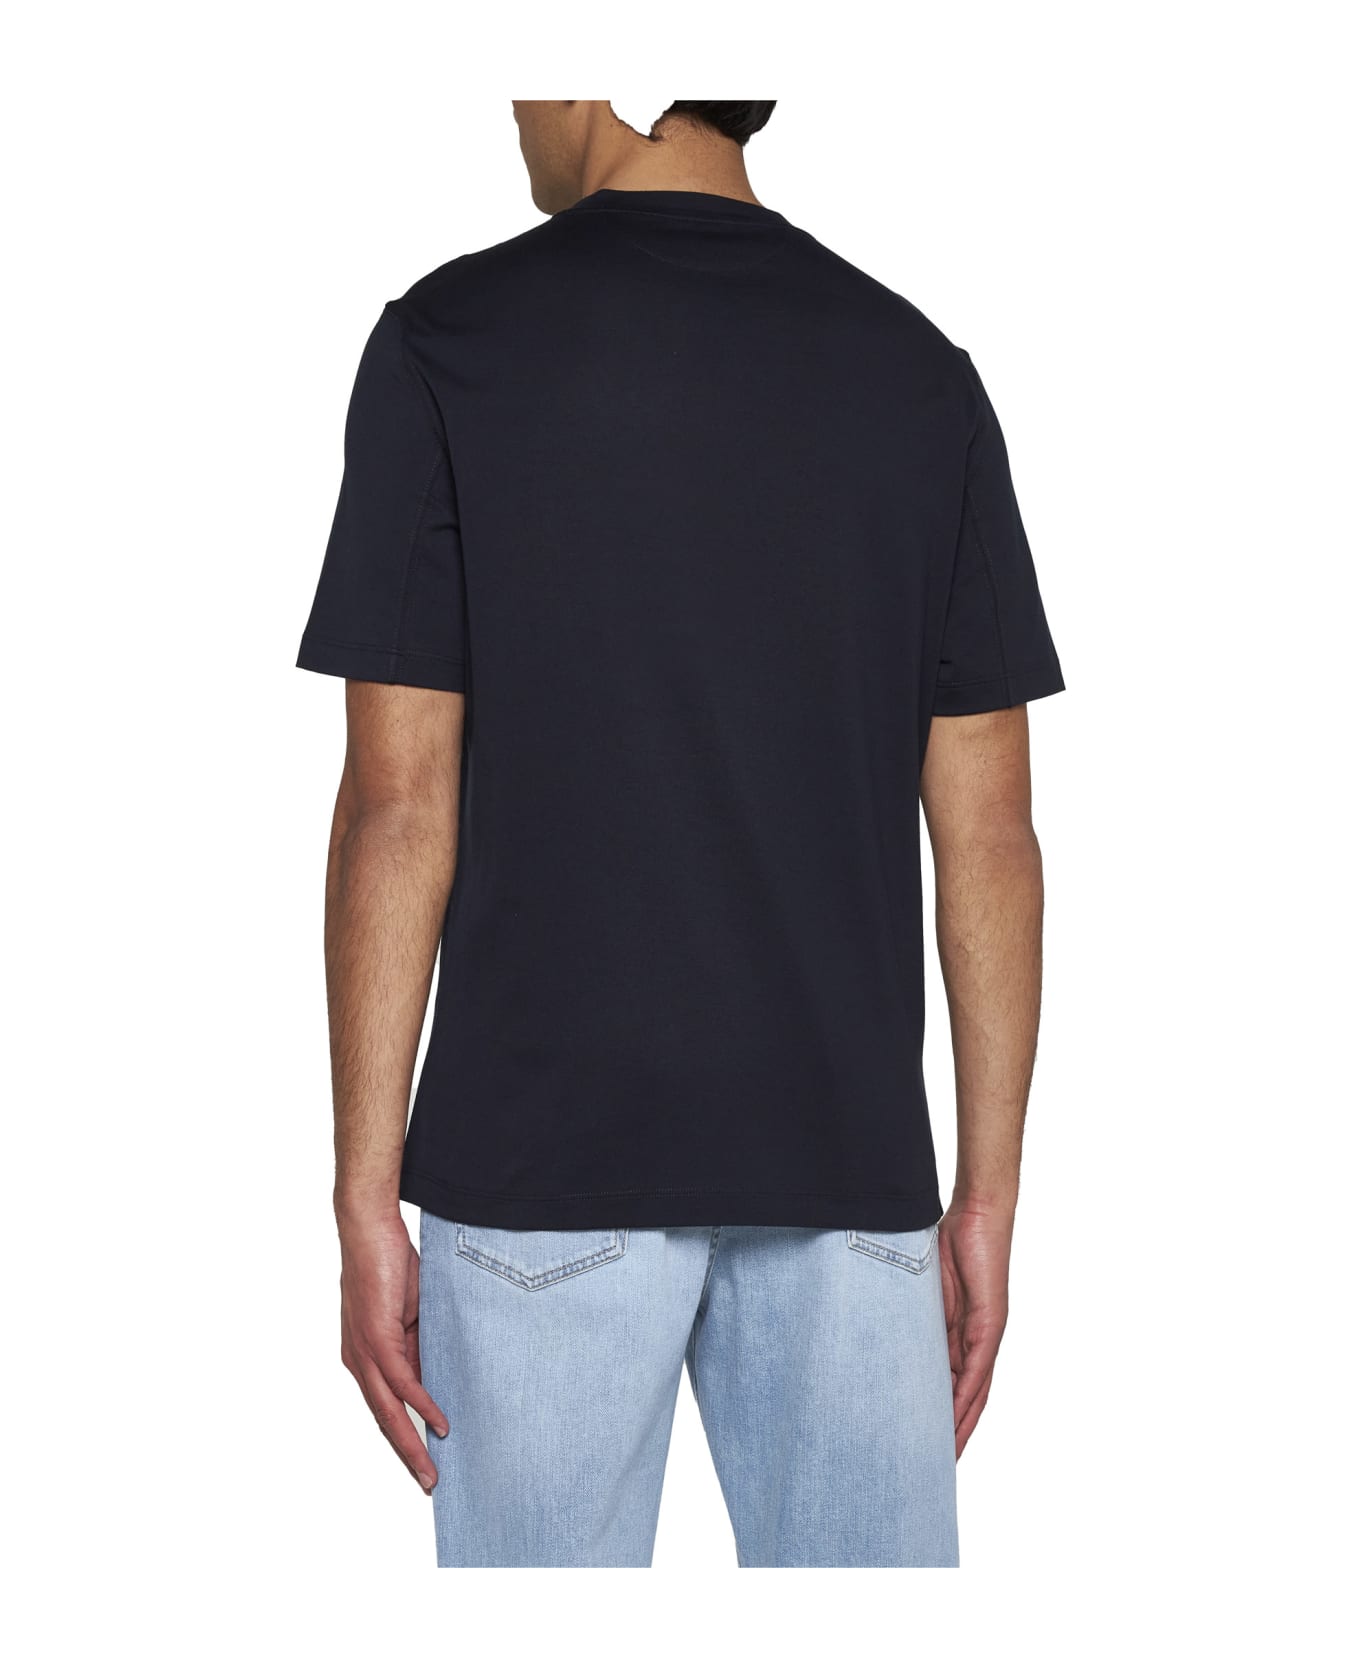 Brunello Cucinelli T-shirt - Blu navy シャツ